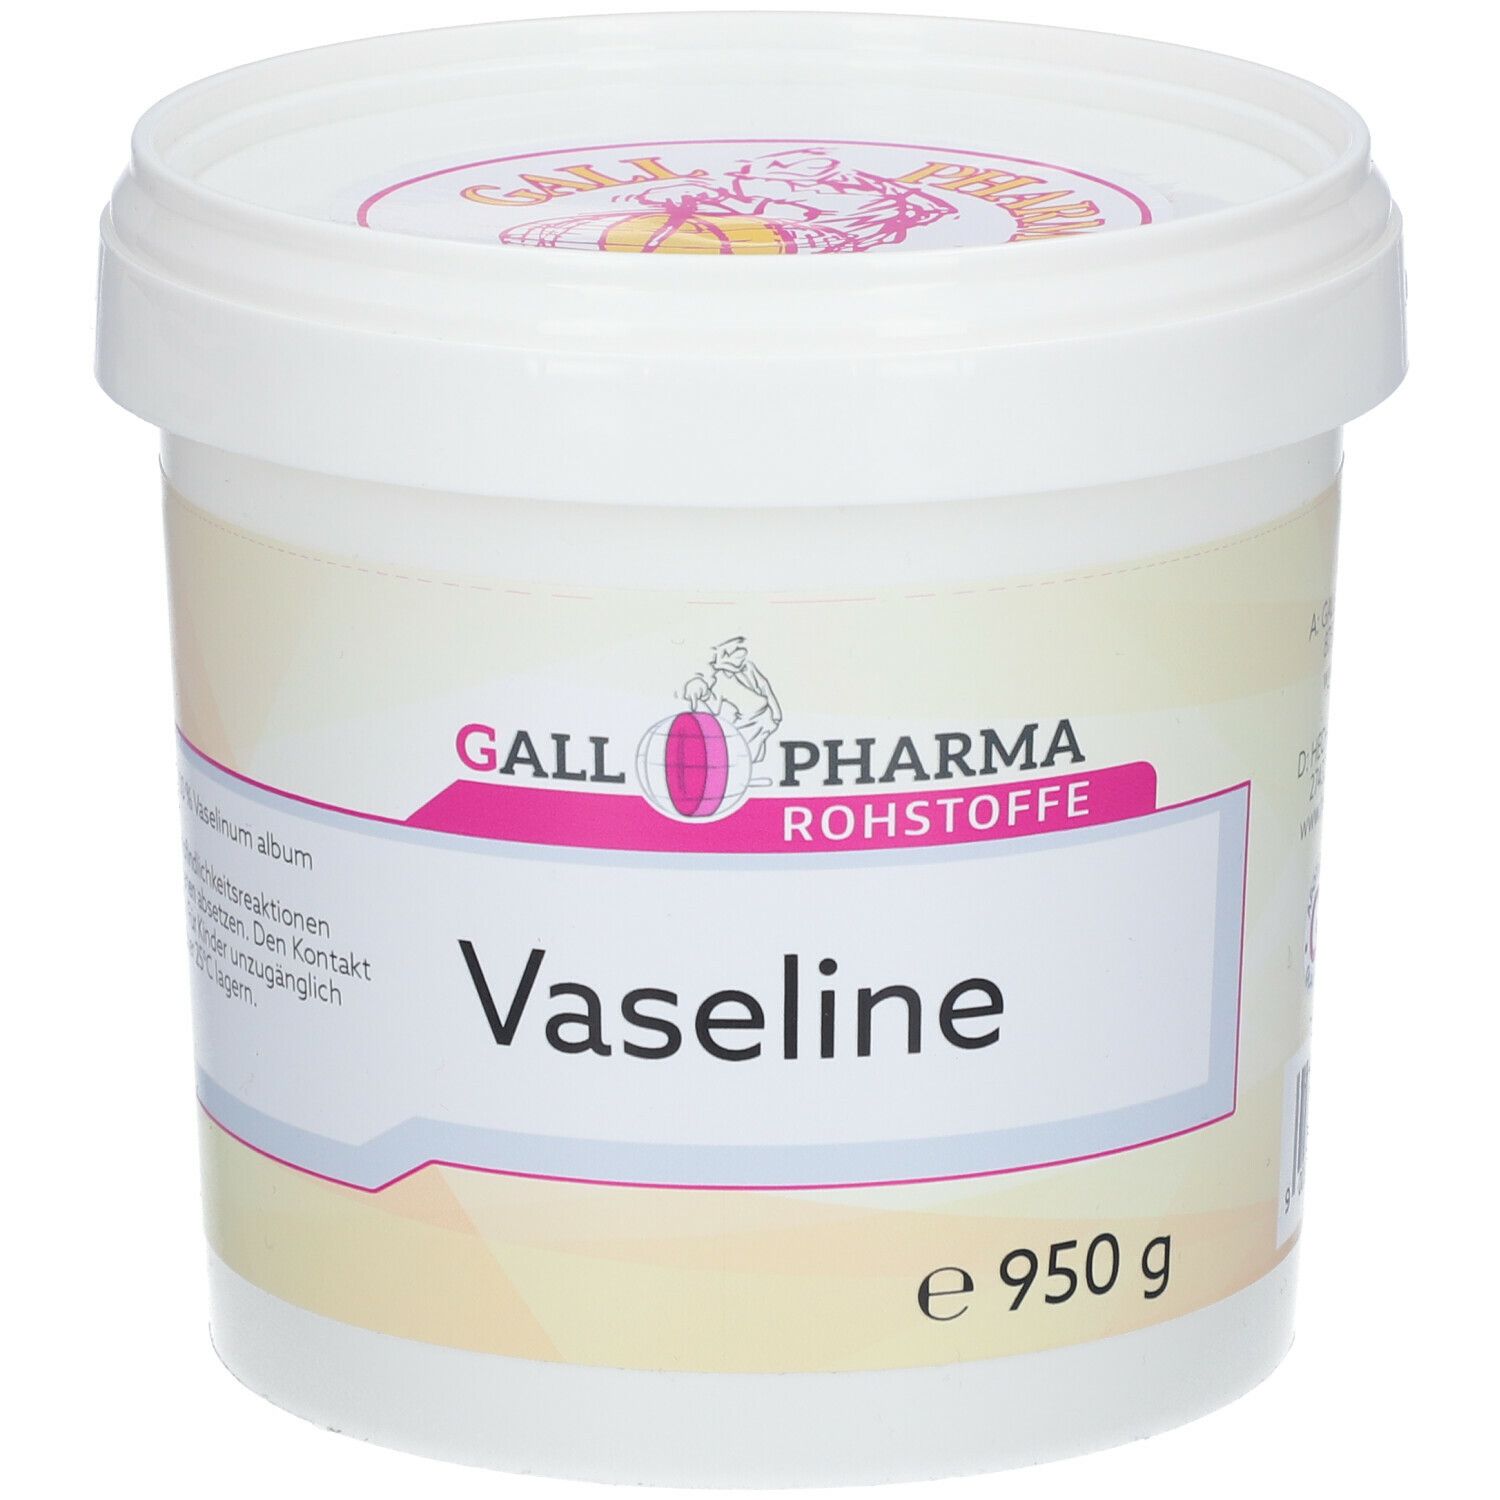 Image of GALL PHARMA Vaseline